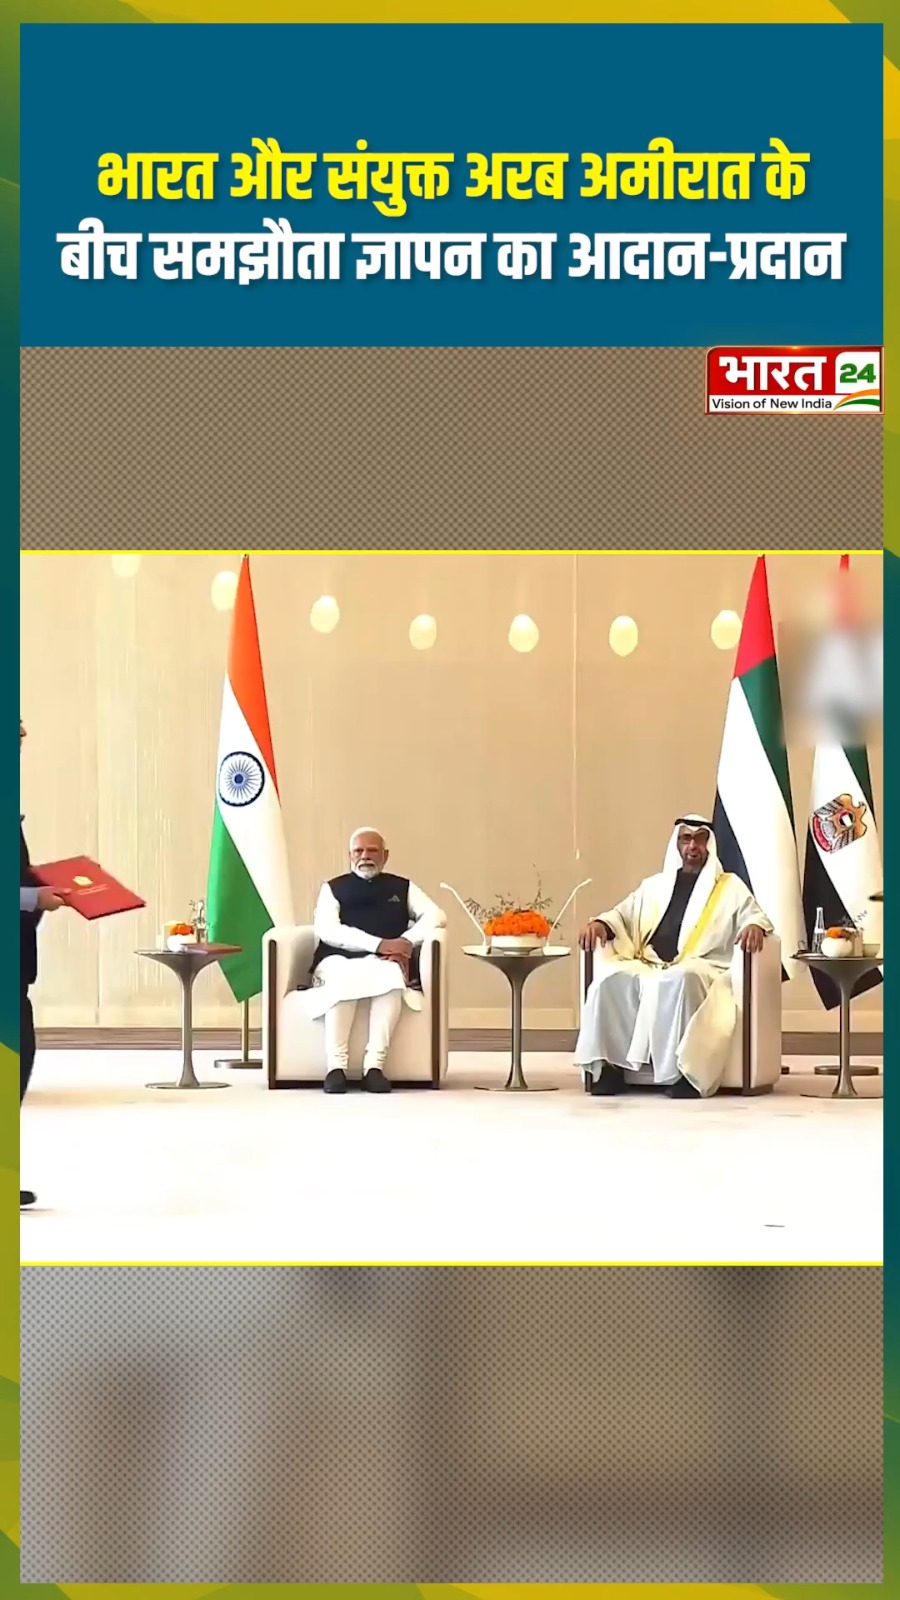 भारत और संयुक्त अरब अमीरात के बीच समझौता ज्ञापन का आदान-प्रदान